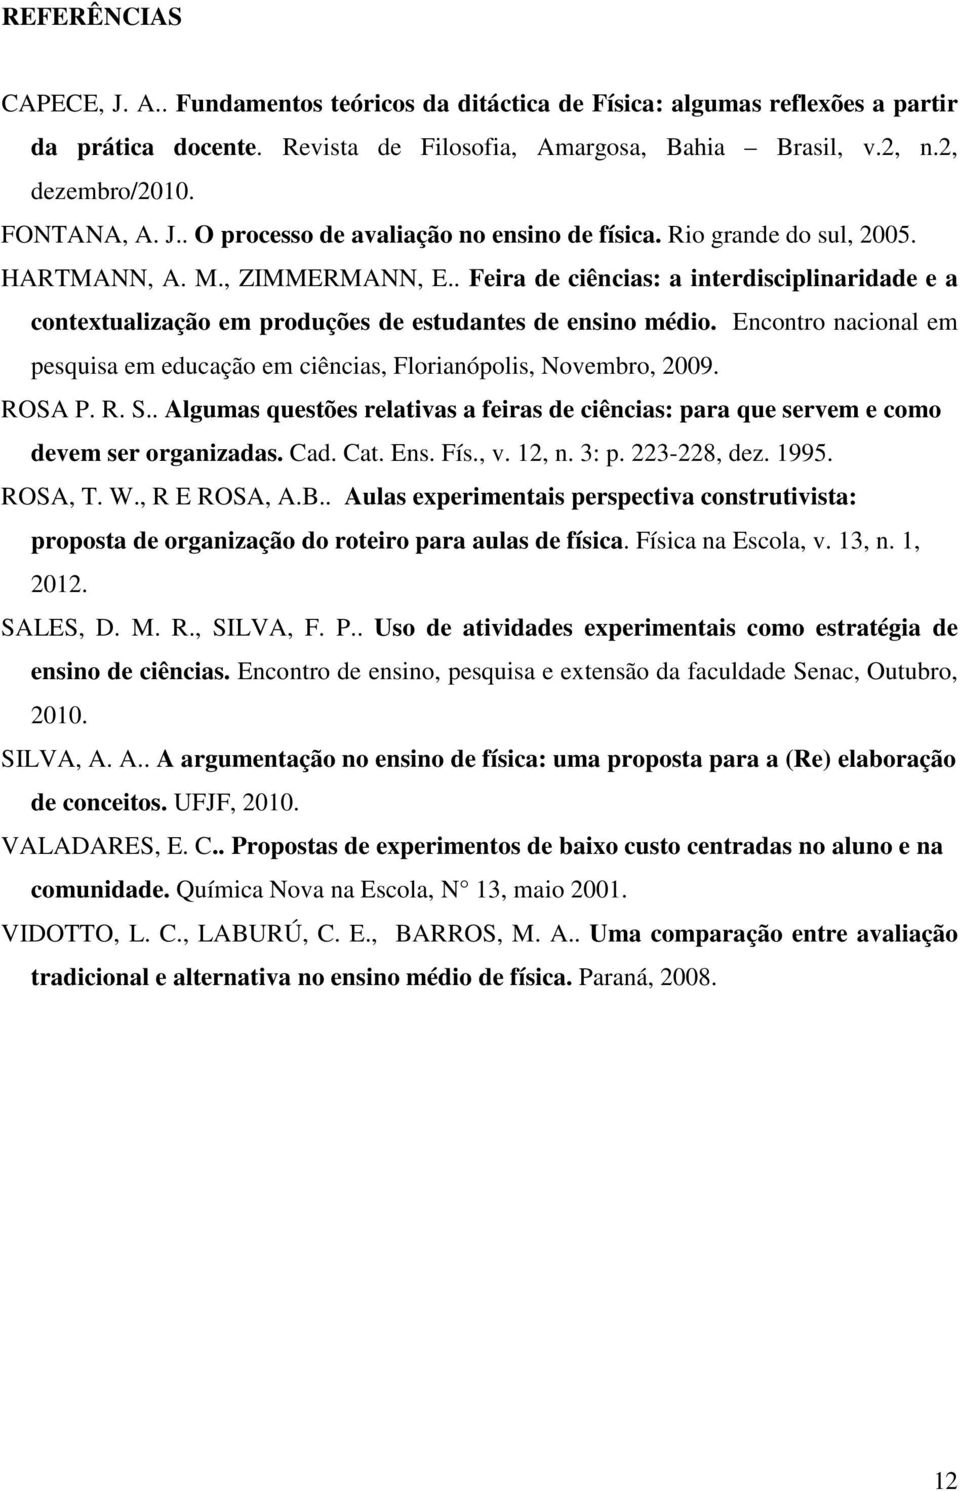 . Feira de ciências: a interdisciplinaridade e a contextualização em produções de estudantes de ensino médio. Encontro nacional em pesquisa em educação em ciências, Florianópolis, Novembro, 2009.